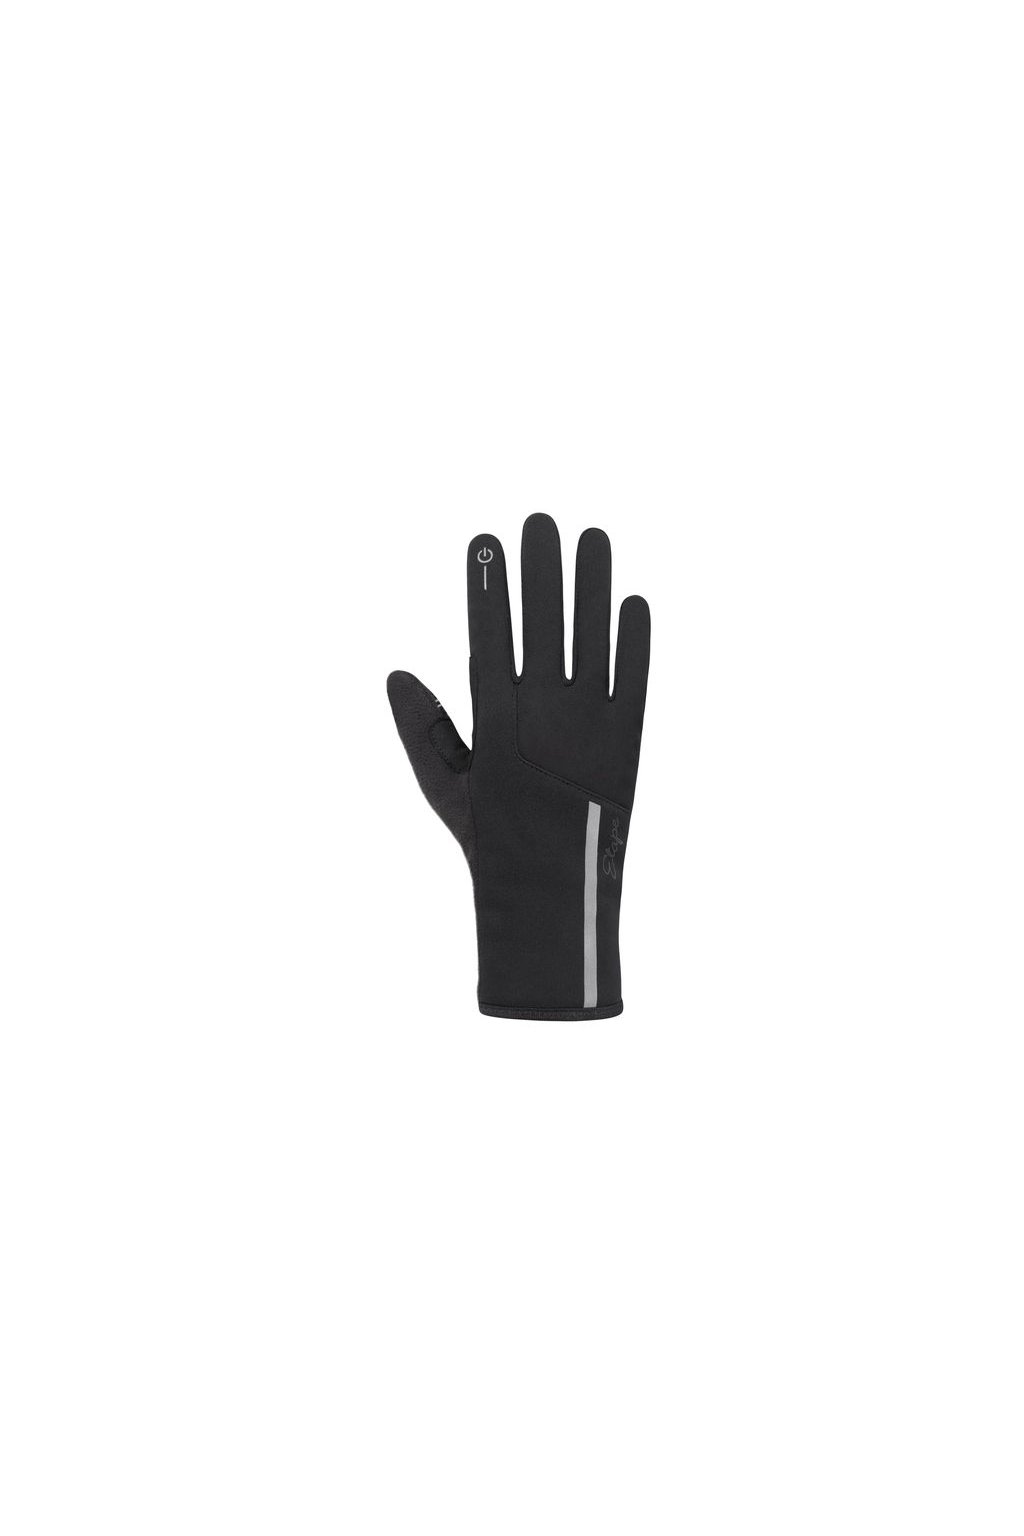 Etape – dámské rukavice DIANA WS+, černá